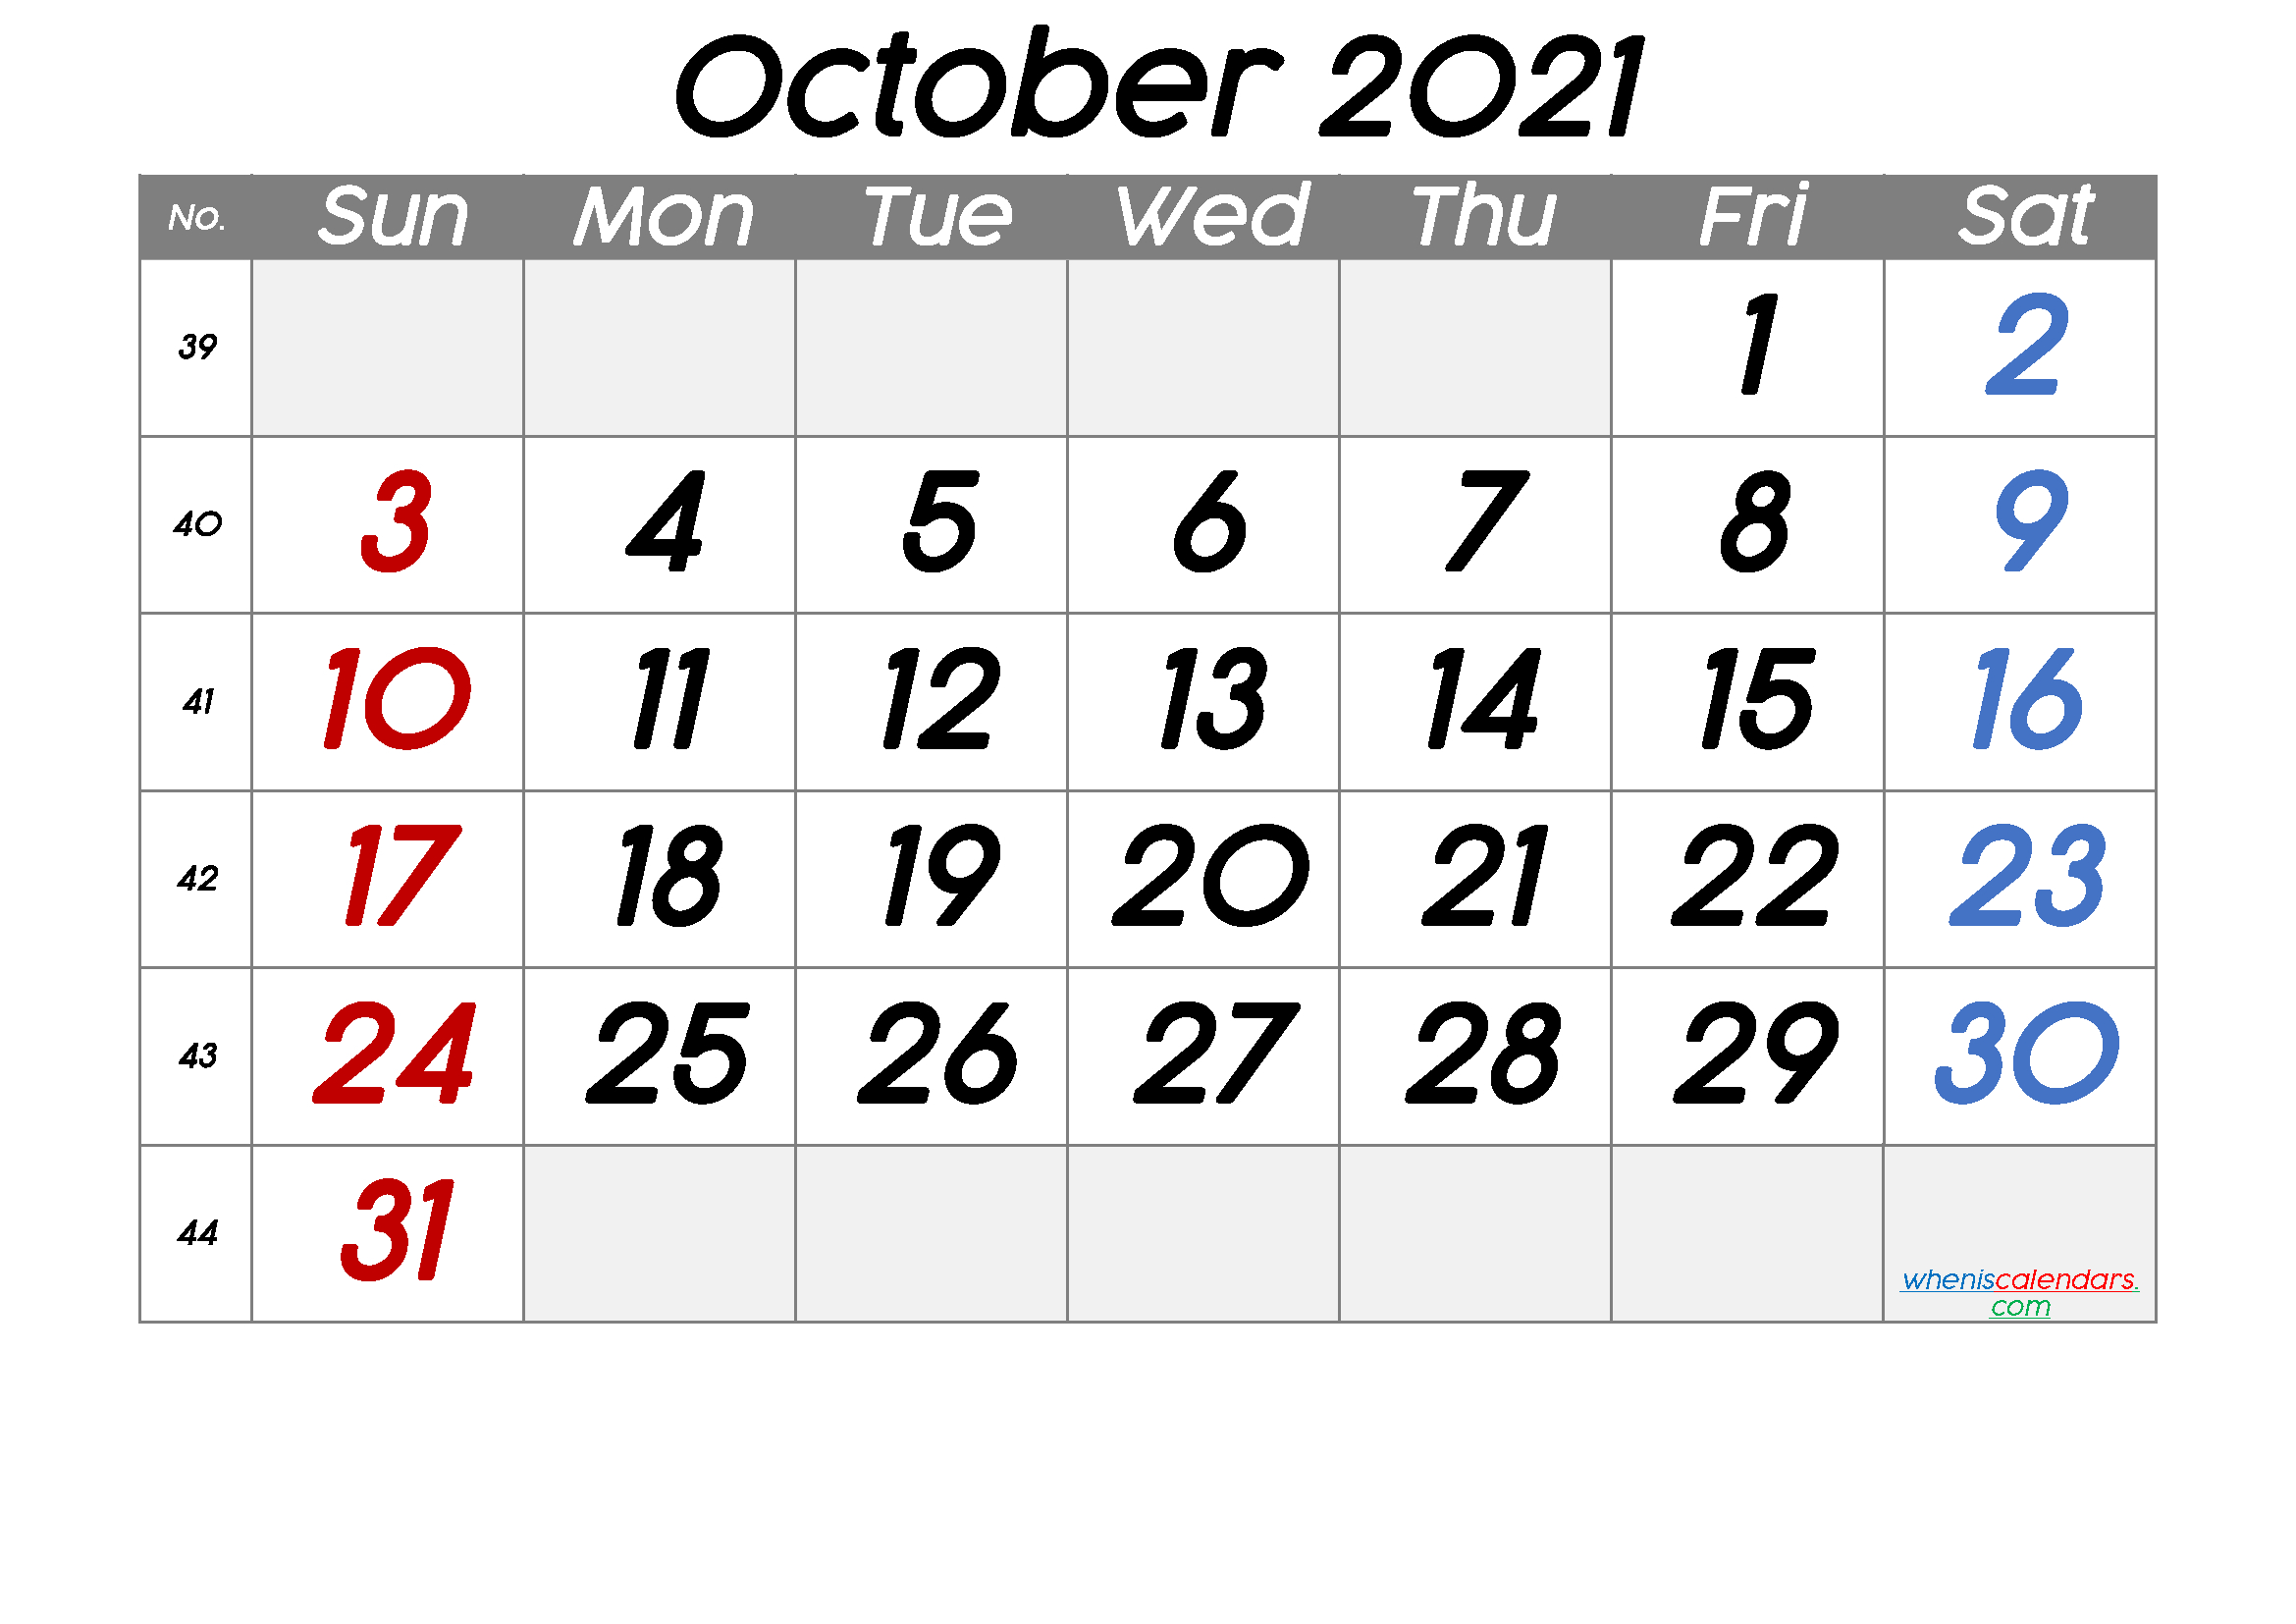 October 2021 Printable Calendar With Week Numbers [Free